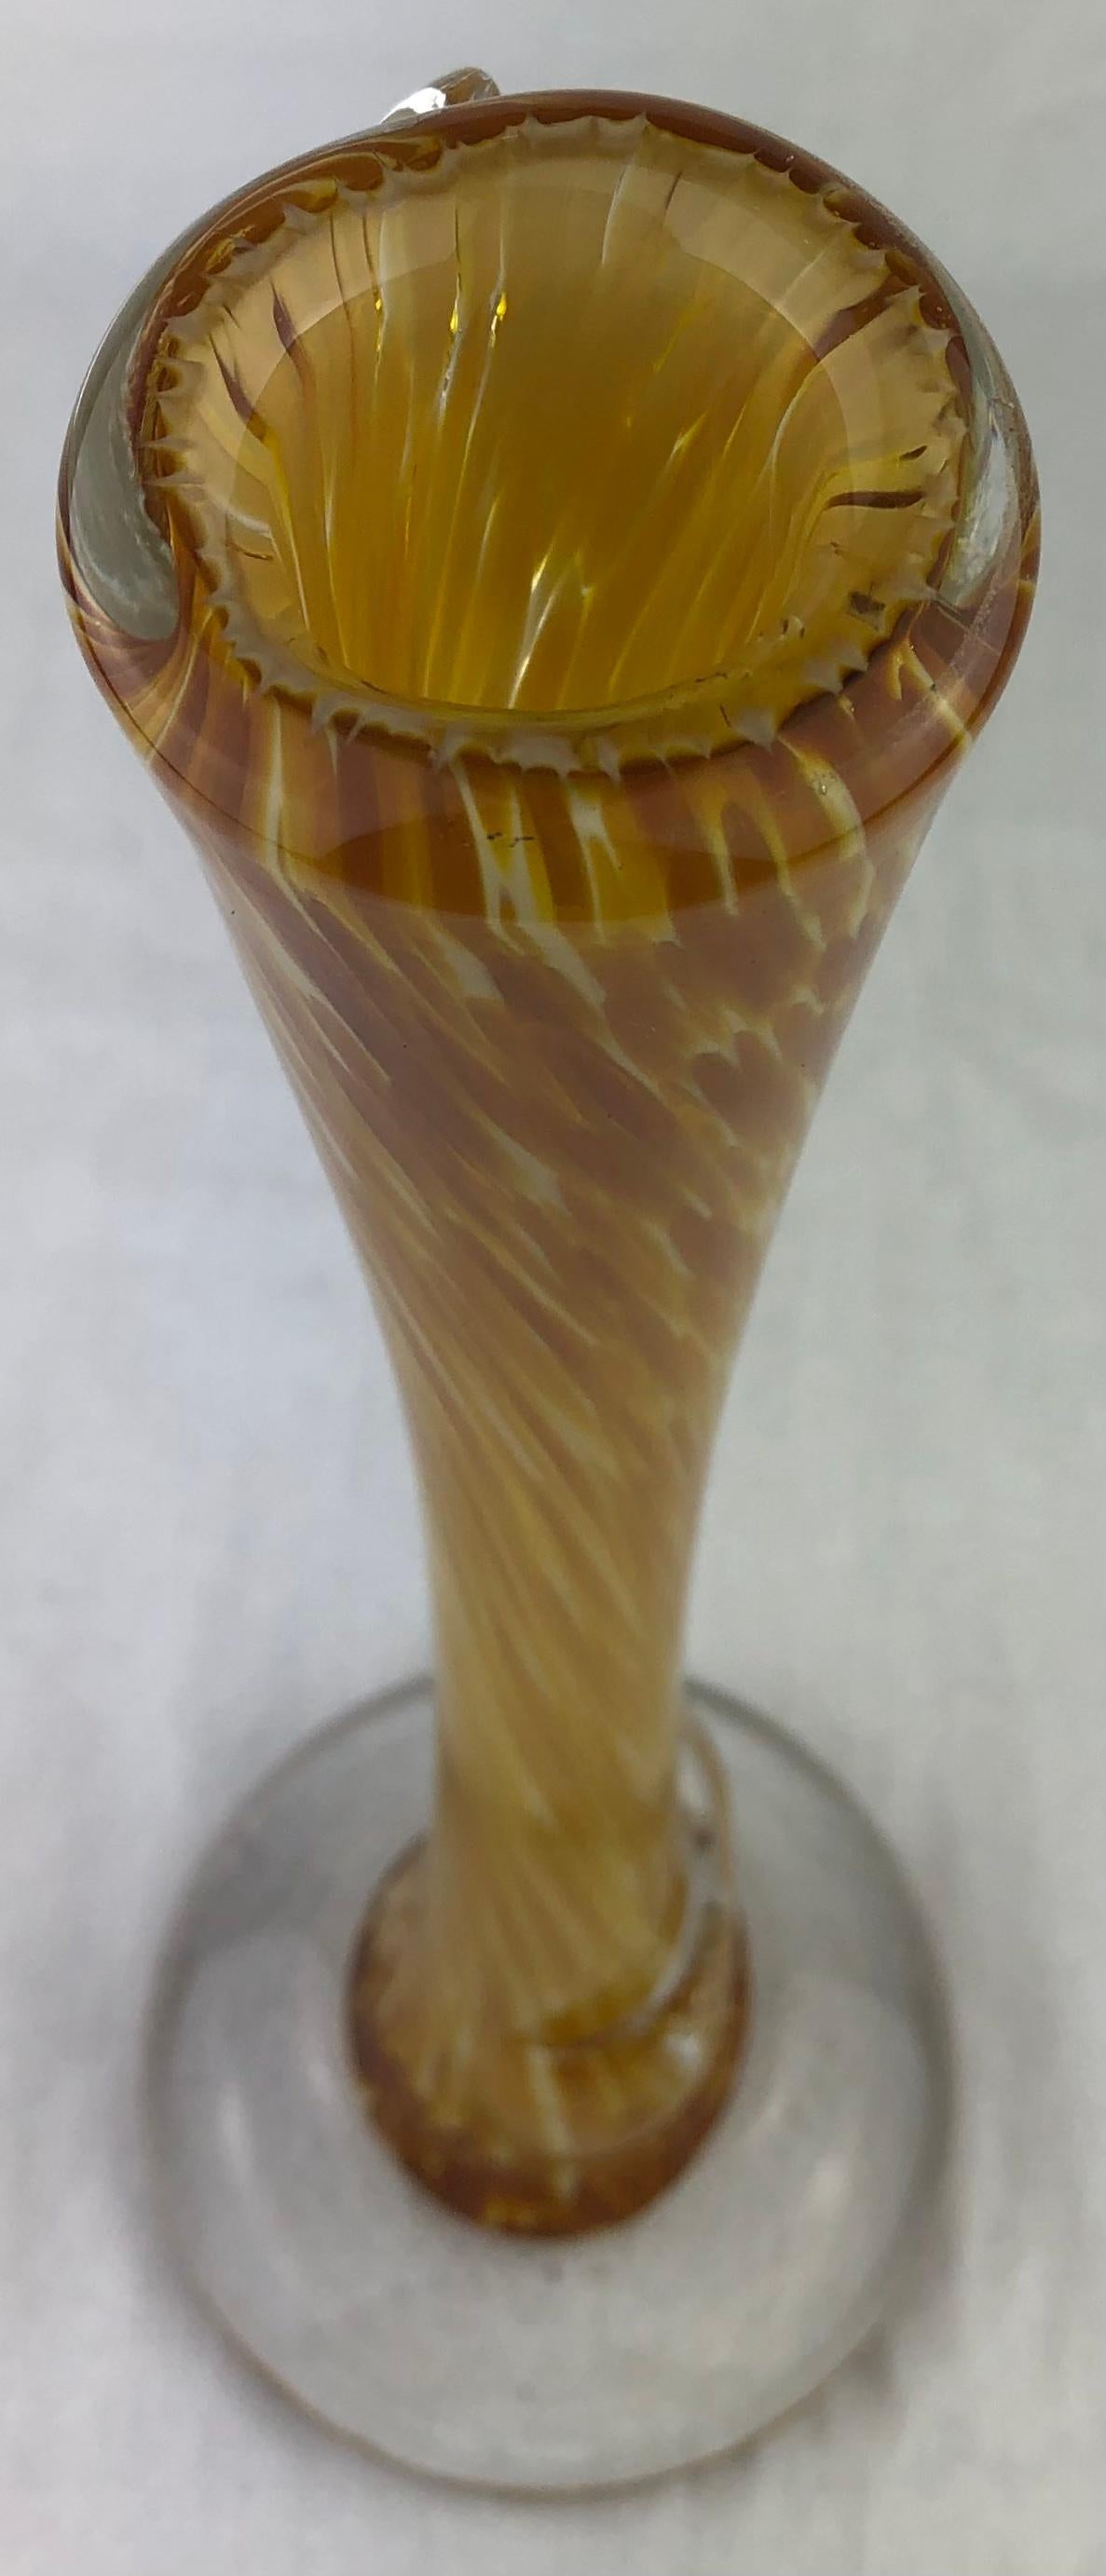 Hohe französische Kunstglasvase mit Trichterhals aus der Mitte des Jahrhunderts mit Stiel oder einzelner Blume. 
Elegante Form und auffallende Farben. 
Geblasen, handgefertigt in Frankreich. 

Abmessungen: 4 3/4